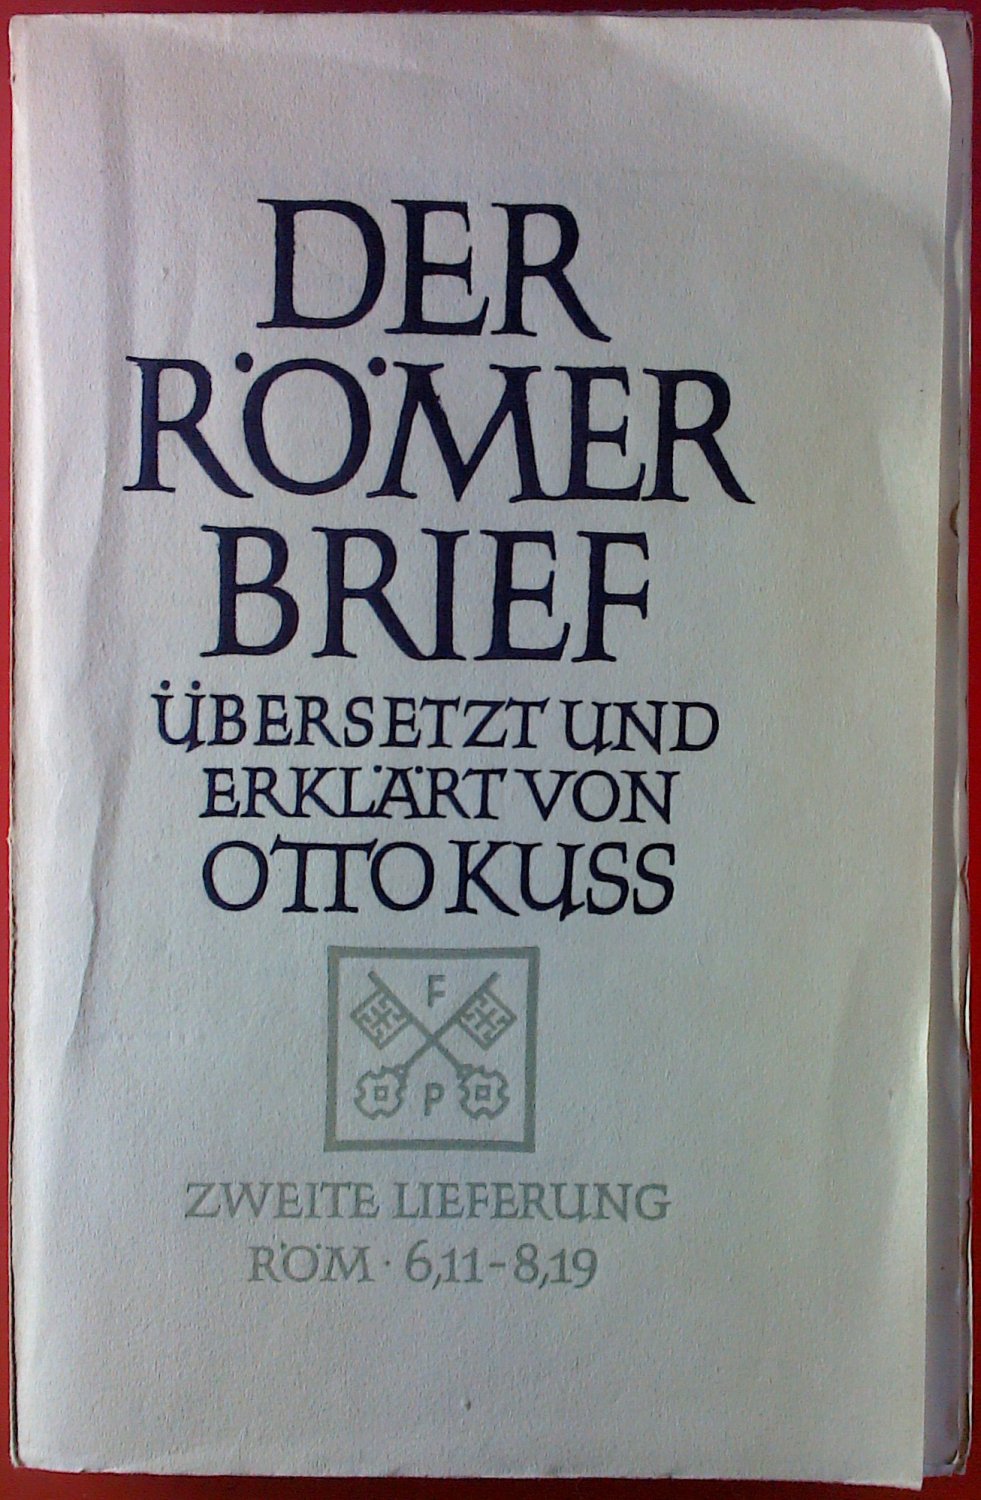 Der Römerbrief.“ (Übersetzt und erklärt von Otto Kuss) – Buch 